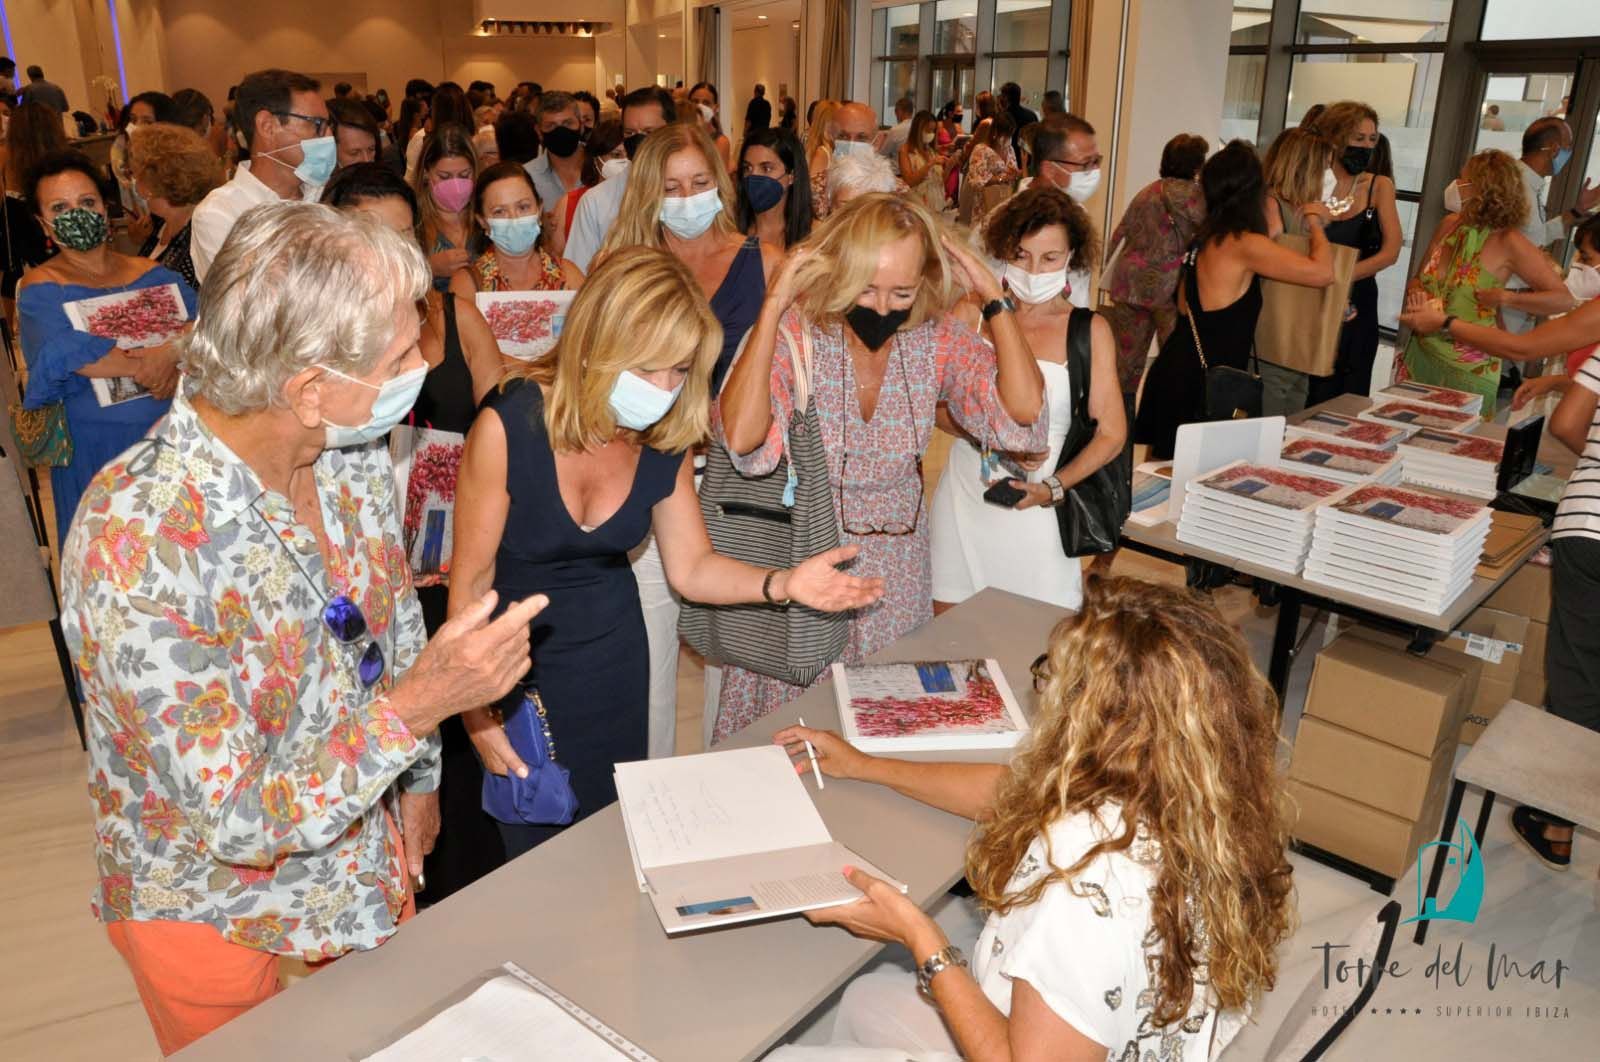 La pintora de Ibiza Marta Torres presenta su obra ante más de 200 personas